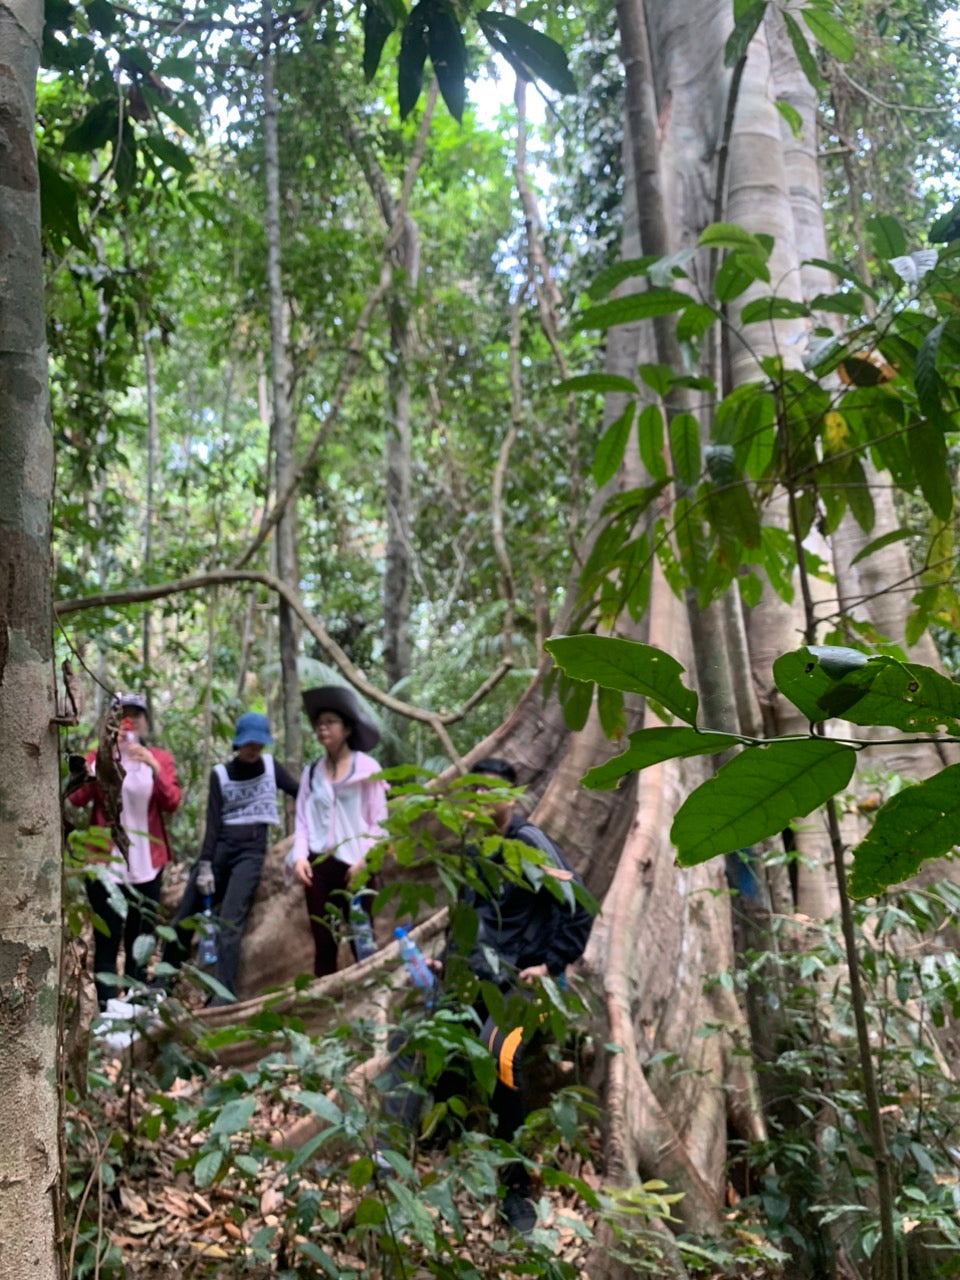 91A: Tour de día completo, pueblo de Ta Lai: viaje en el tiempo, senderos de elefantes y exploración cultural del pueblo Ma